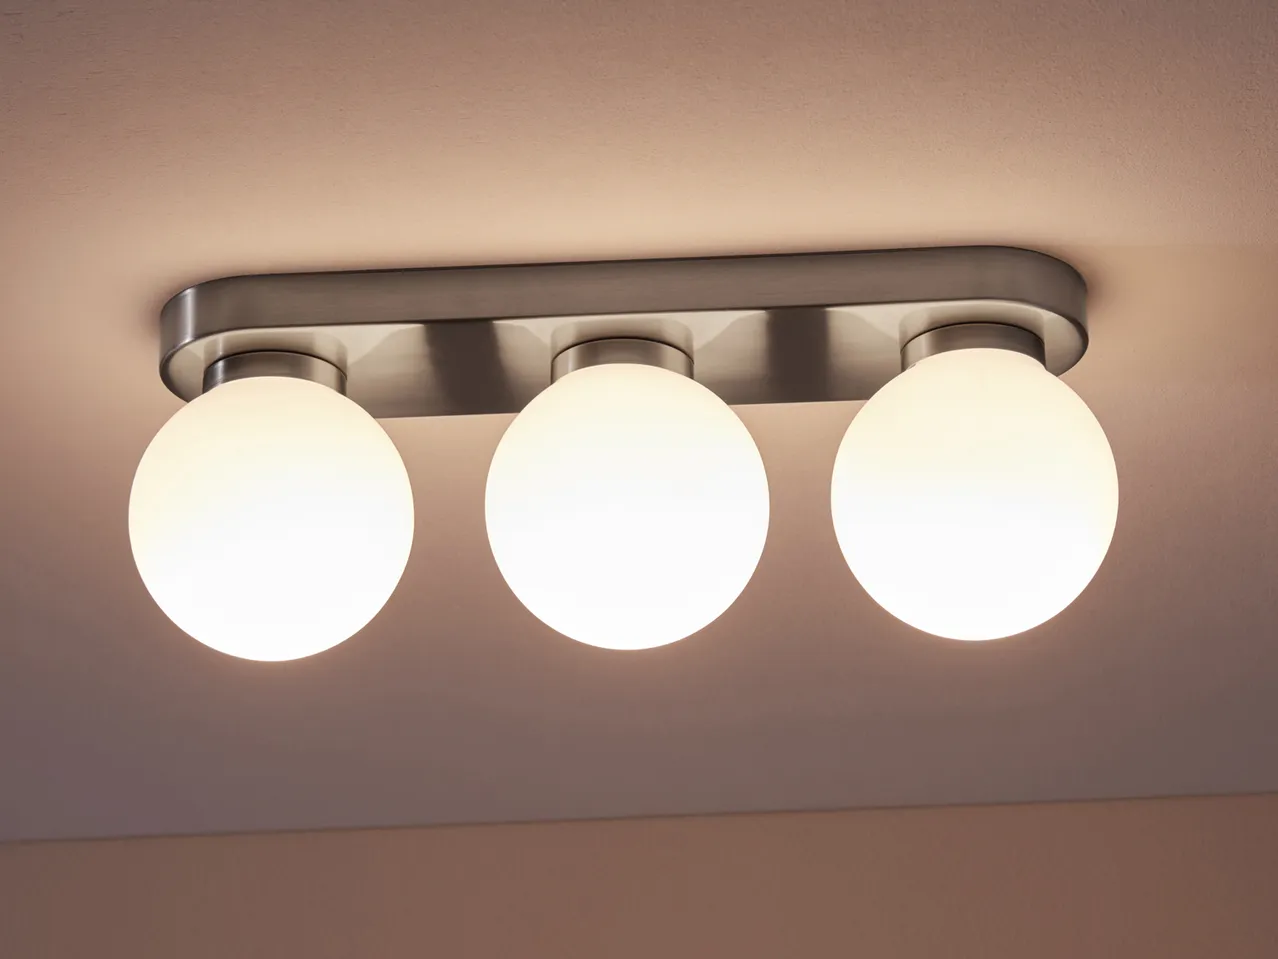 Lampada LED da soffitto , prezzo 29.99 EUR 
Lampada LED da soffitto 
- Risparmio ...